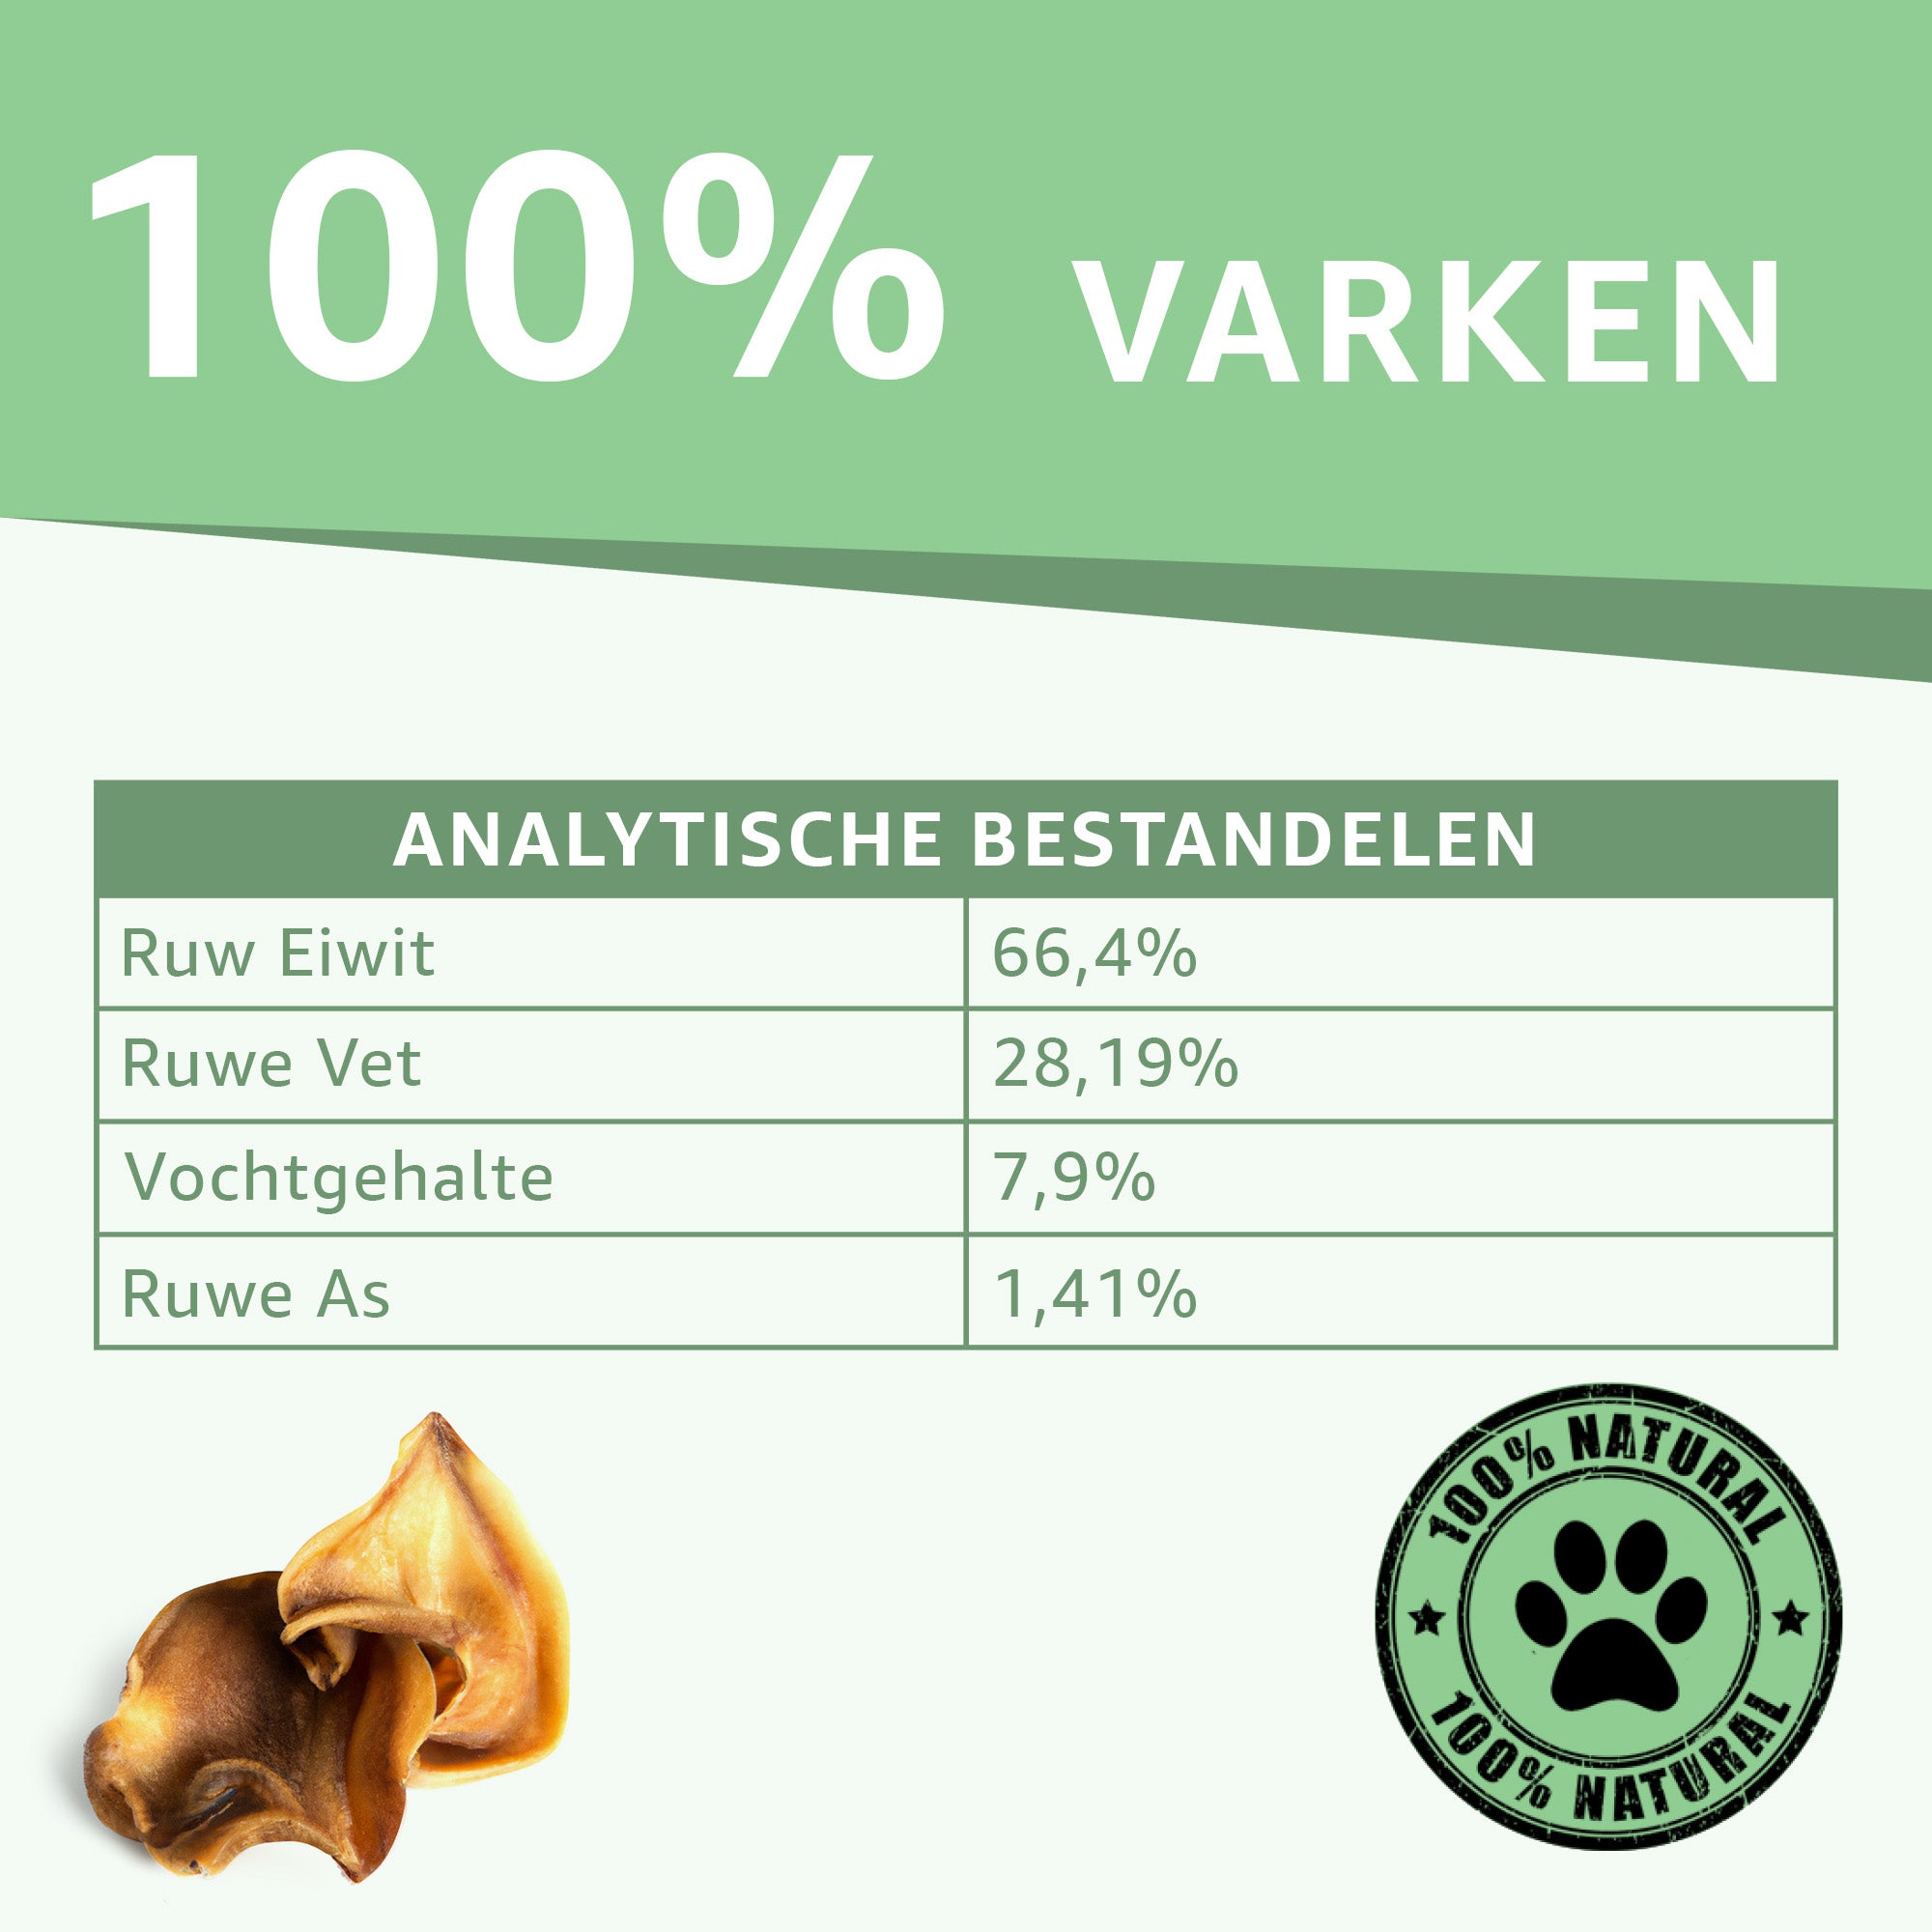 "Analytische Bestandsdelen Varkensoren Snacks: Voedingsinformatie en samenstelling onthuld. Natuurlijke eiwitbron, vrij van toevoegingen. Ideale keuze voor gezonde en smakelijke hondensnacks."